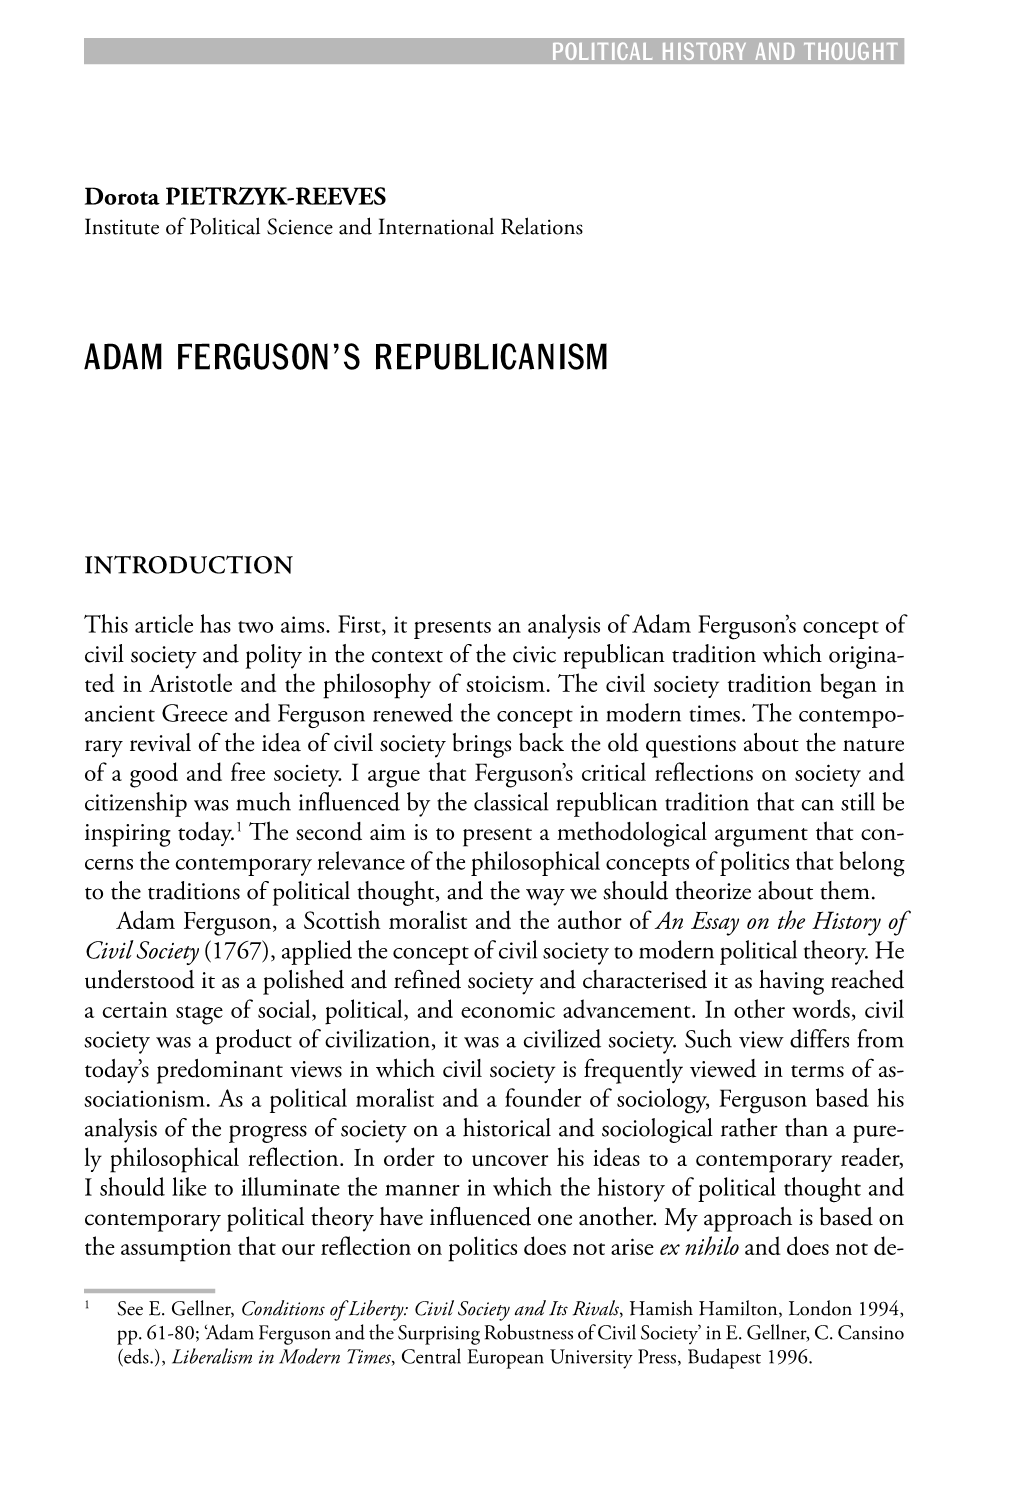 Adam Ferguson's Republicanism